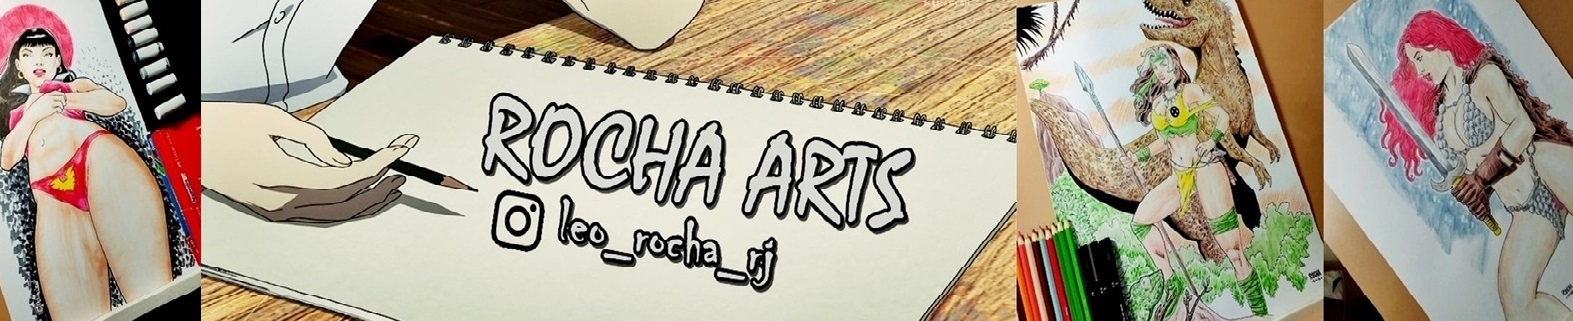 Leo Rocha Arts